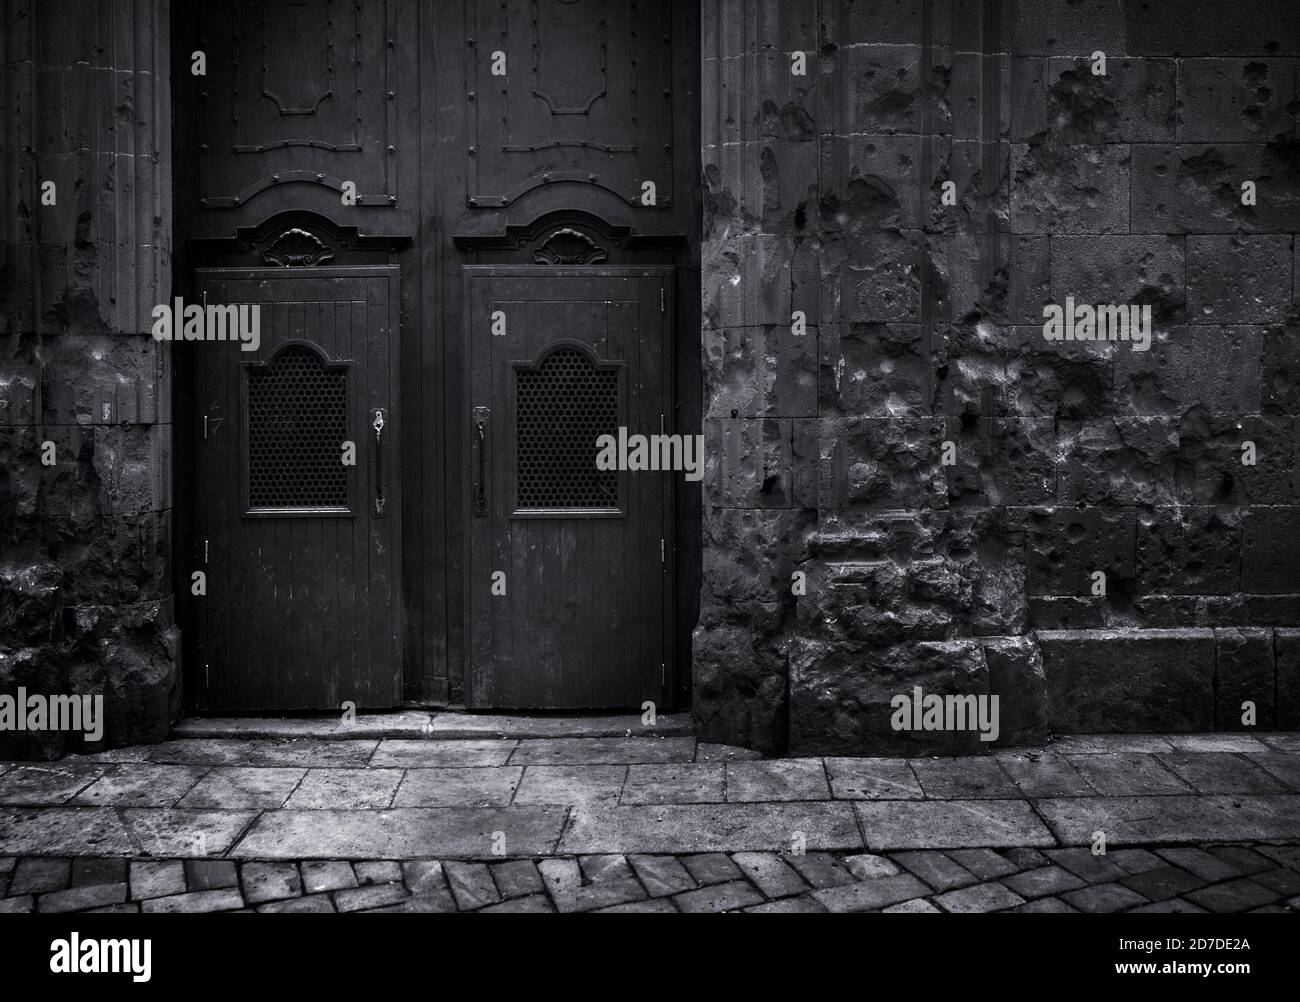 Schwarz-Weiß-Bild dunkel Edition.Schrapnel Aufprall gegen eine Wand Und alten Tempel Tür Saint Philip Neri in Barcelona Spanien Stockfoto